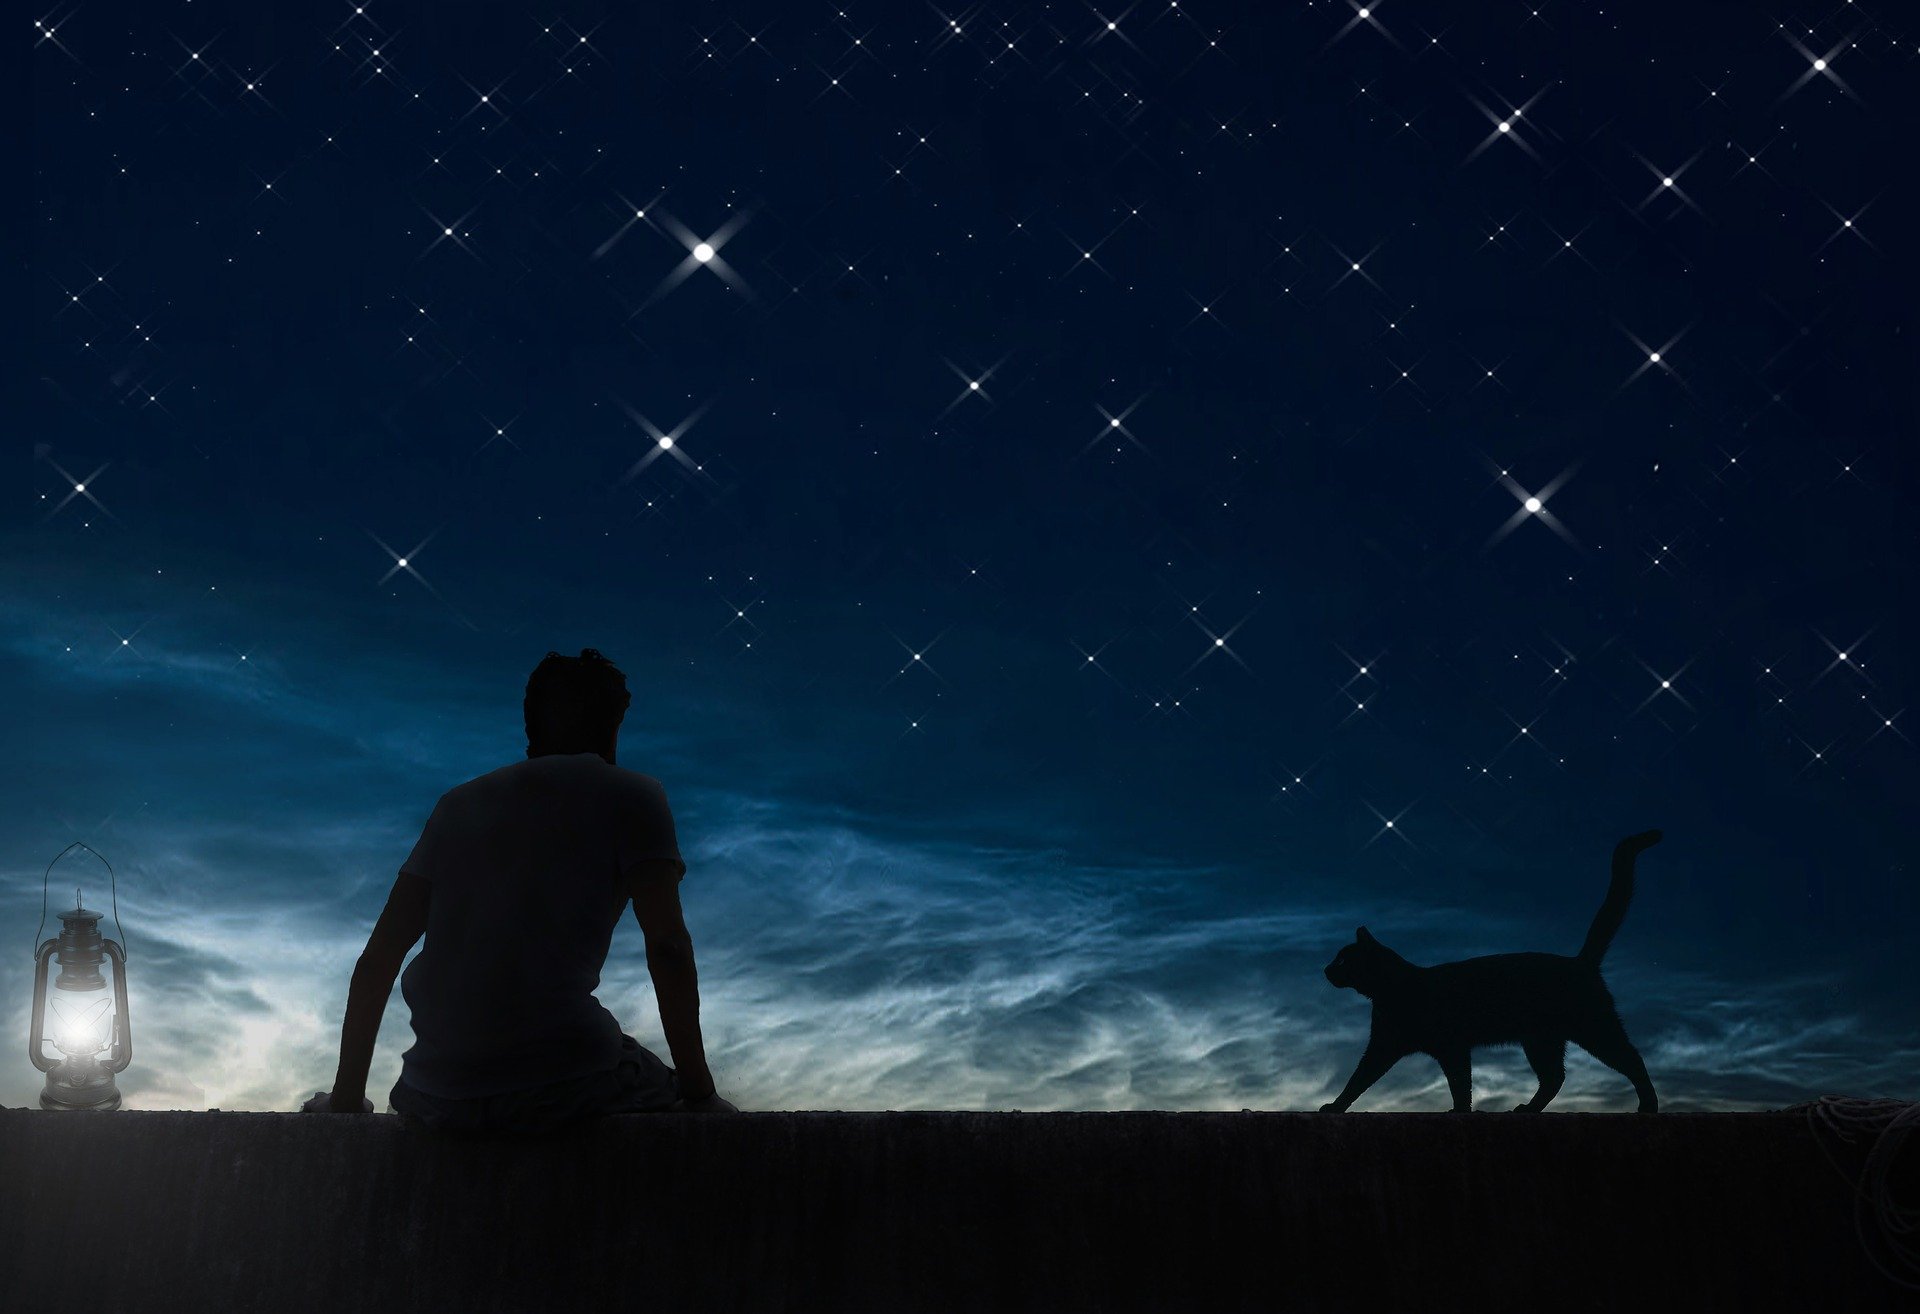 Скачать обои бесплатно Люди, Звезды, Ночь, Кот, Звездное Небо, Художественные картинка на рабочий стол ПК